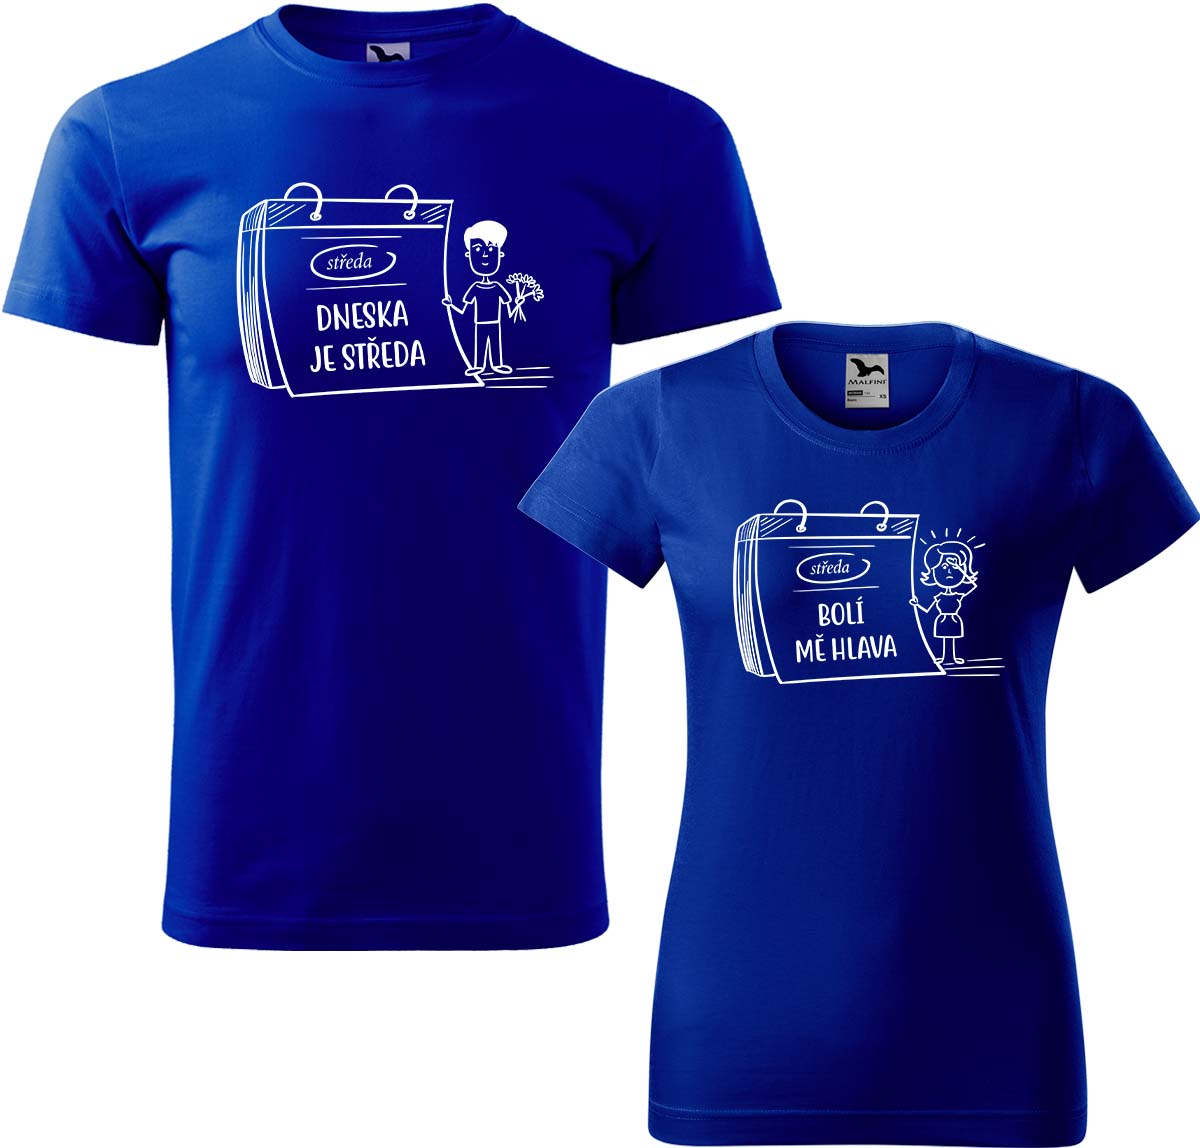 Trička pro páry - Dneska je středa Barva: Královská modrá (05), Velikost dámské tričko: S, Velikost pánské tričko: M